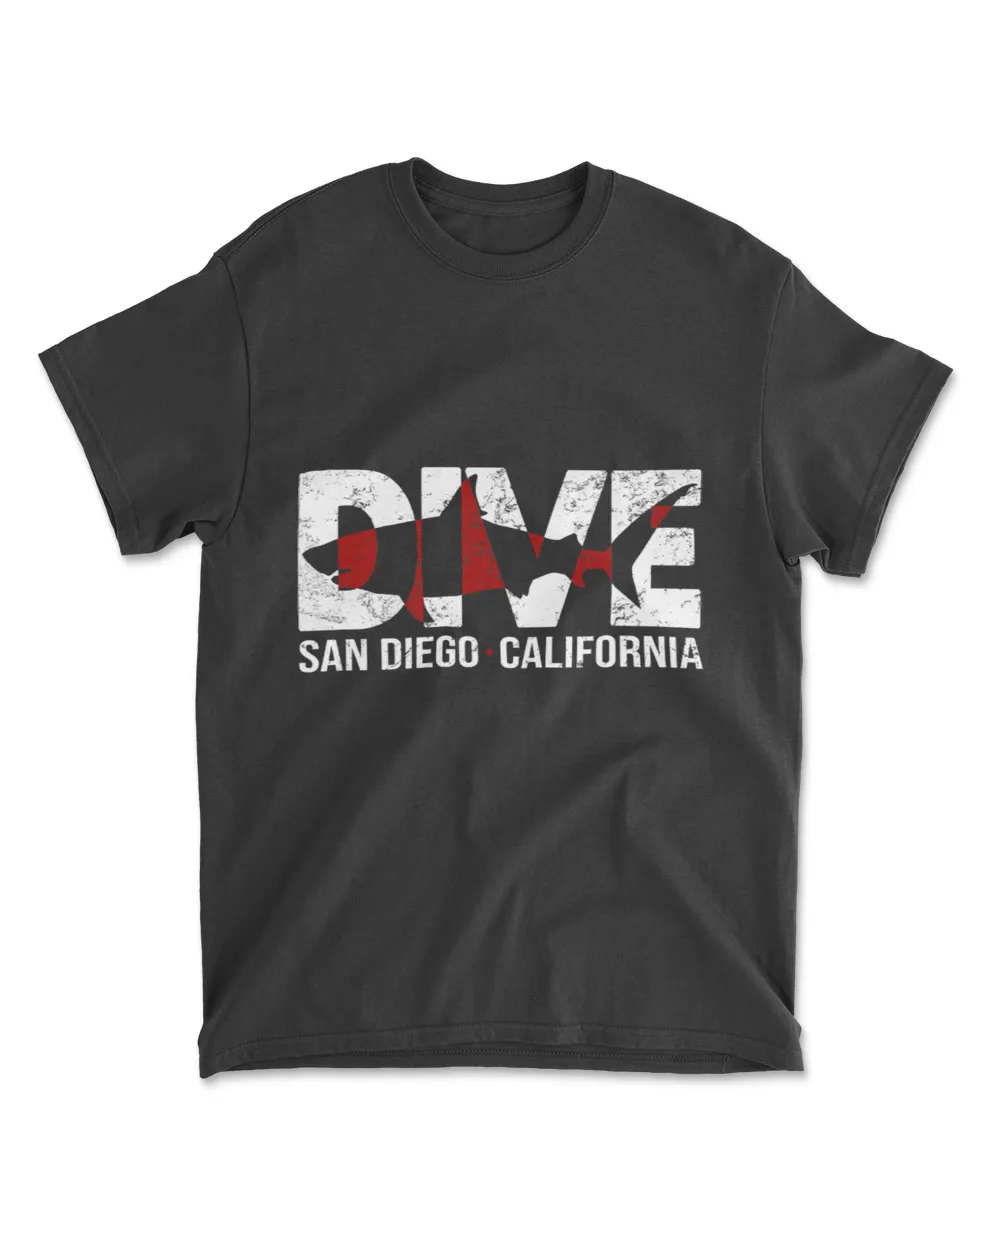 DIVE San Diego California SCUBA DIVING T-Shirt